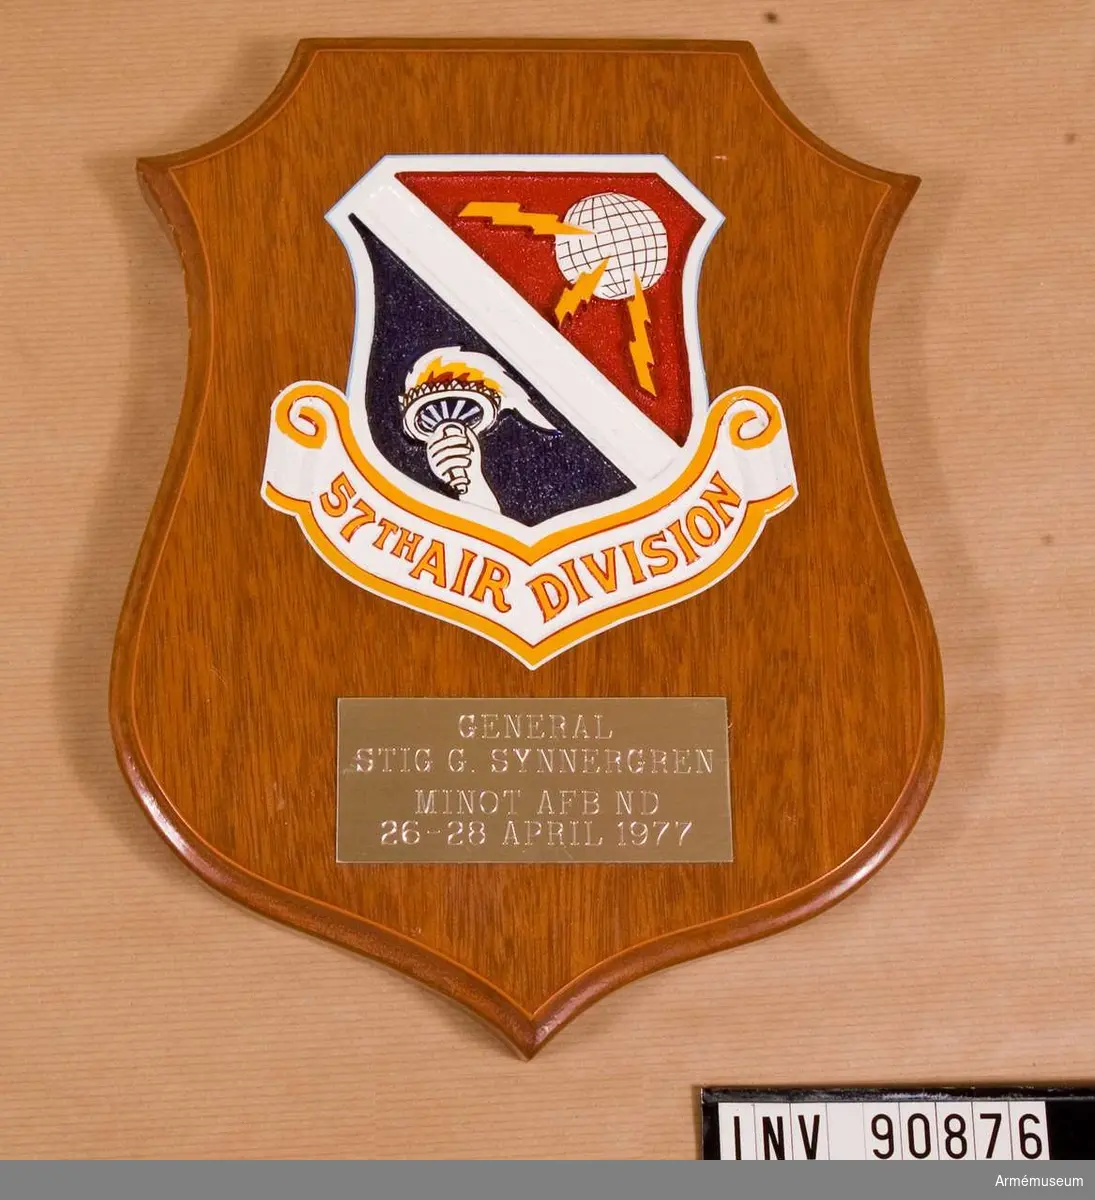 Fästade mot en sköldformad träbotten är 57th Air Divisions märke och en platta med ingraverad text.